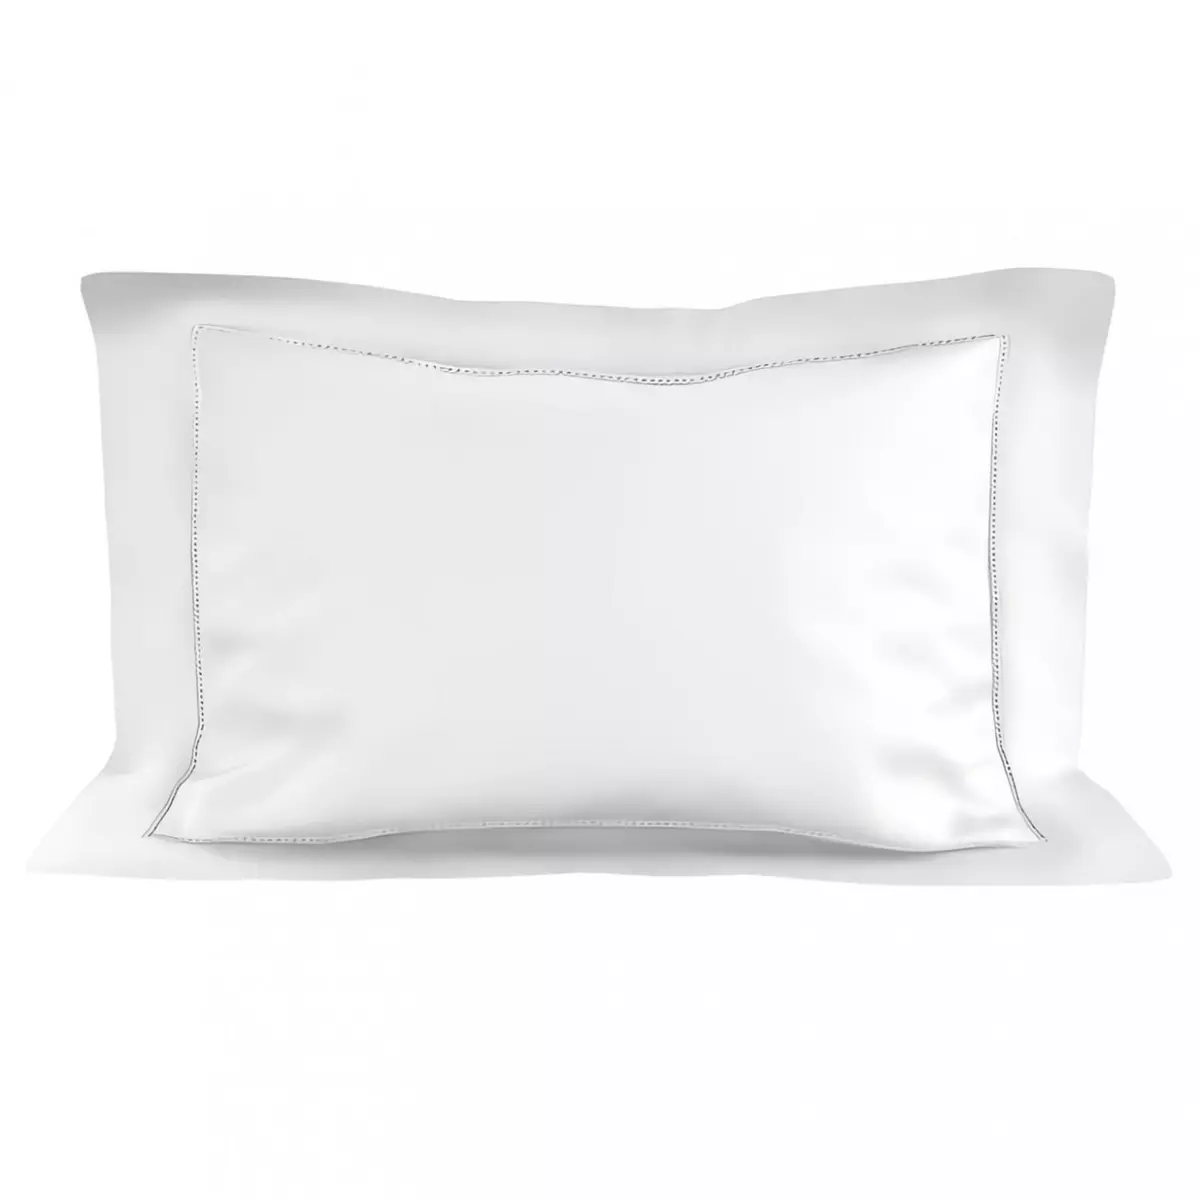 SOLEIL D'OCRE Taie d'oreiller en coton 50x75 cm PERCALE blanc, par Soleil d'ocre